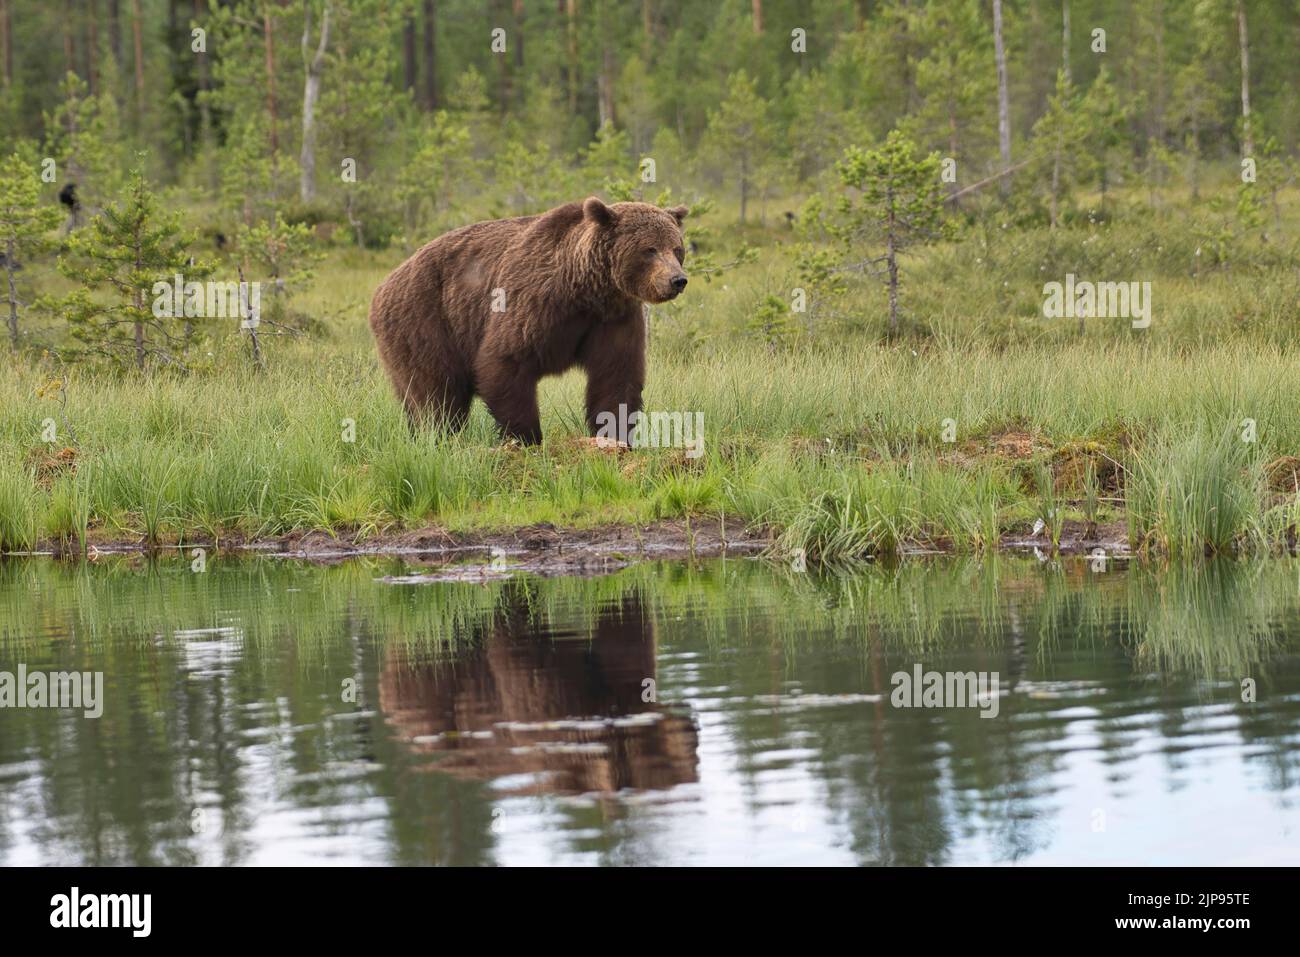 Oso pardo (Ursus arctos) reflejado en un estanque boscoso en el bosque boreal o taiga de Finlandia Foto de stock